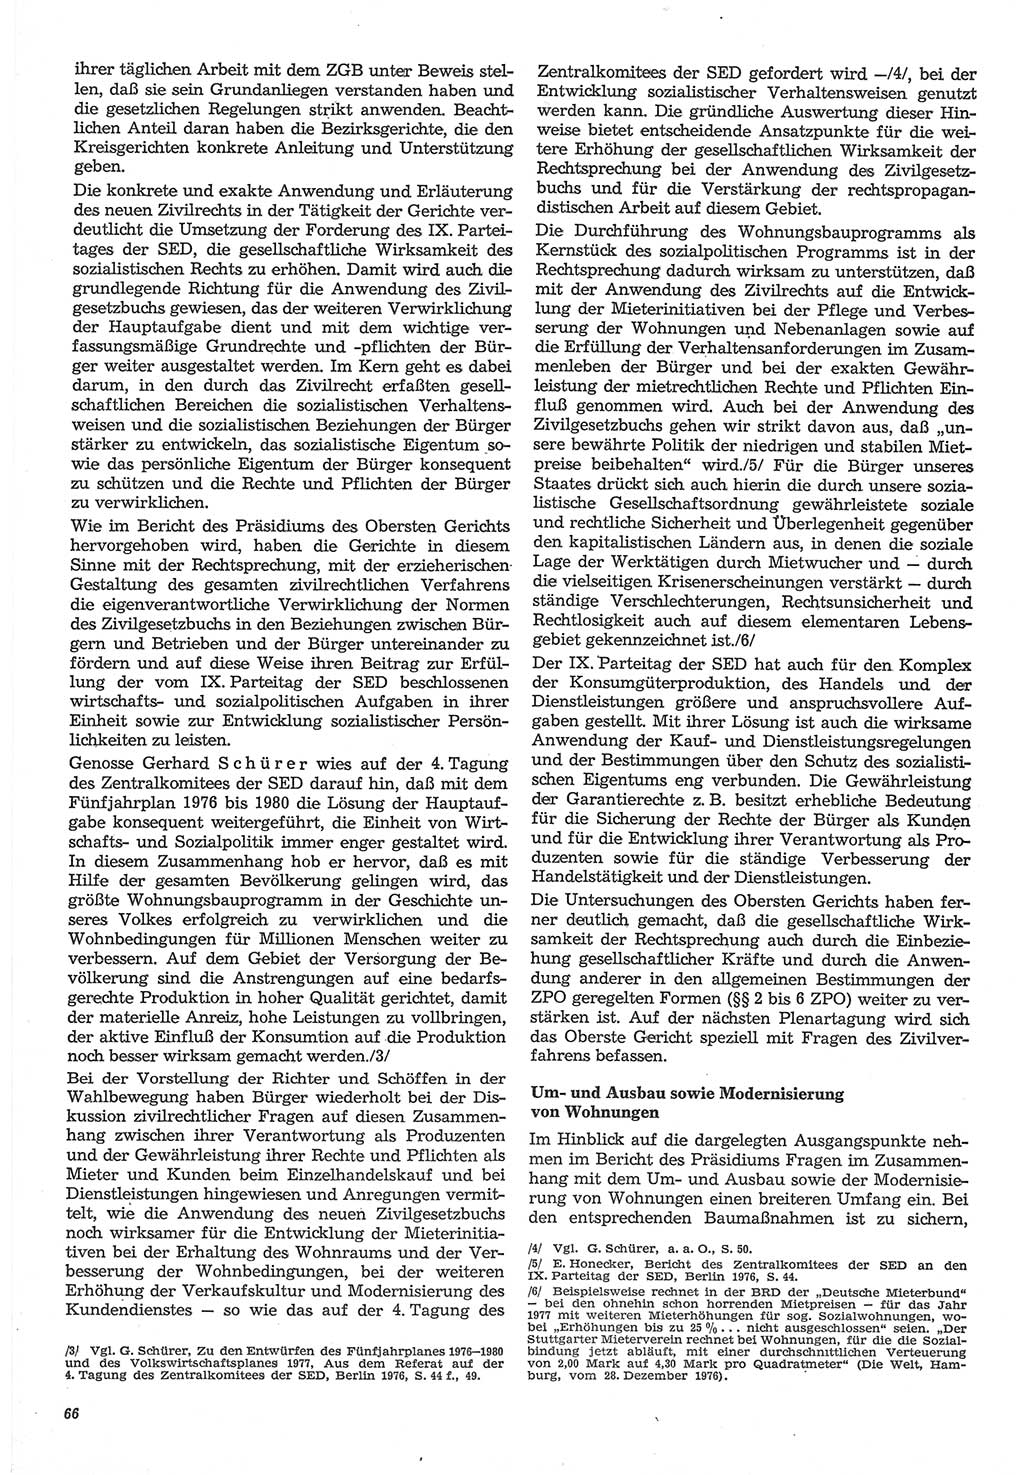 Neue Justiz (NJ), Zeitschrift für Recht und Rechtswissenschaft-Zeitschrift, sozialistisches Recht und Gesetzlichkeit, 31. Jahrgang 1977, Seite 66 (NJ DDR 1977, S. 66)